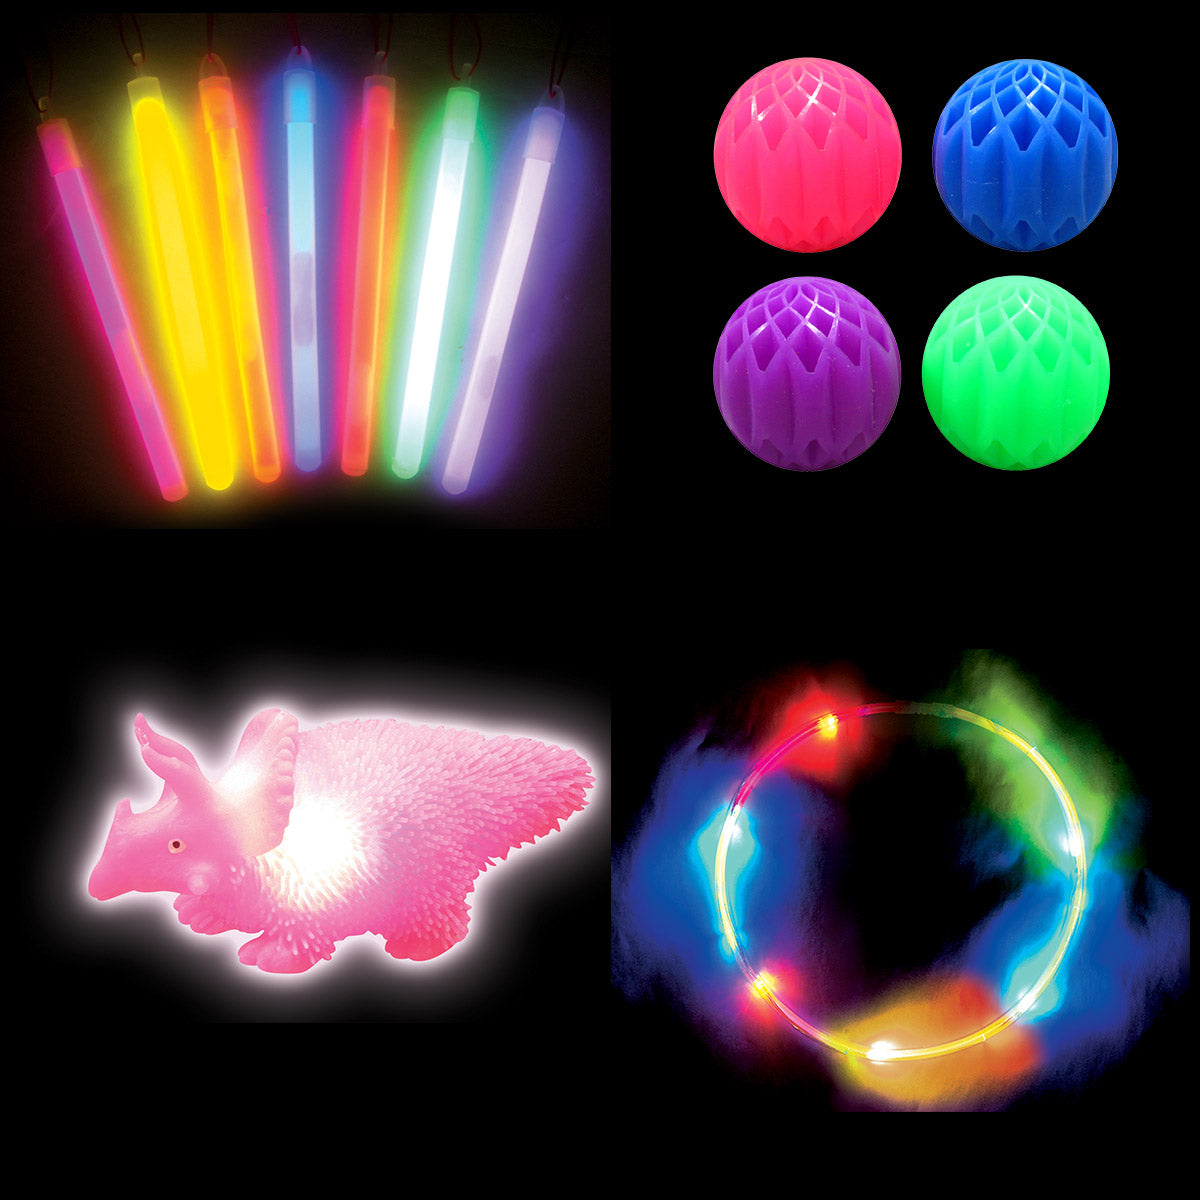 Light-Up Toys